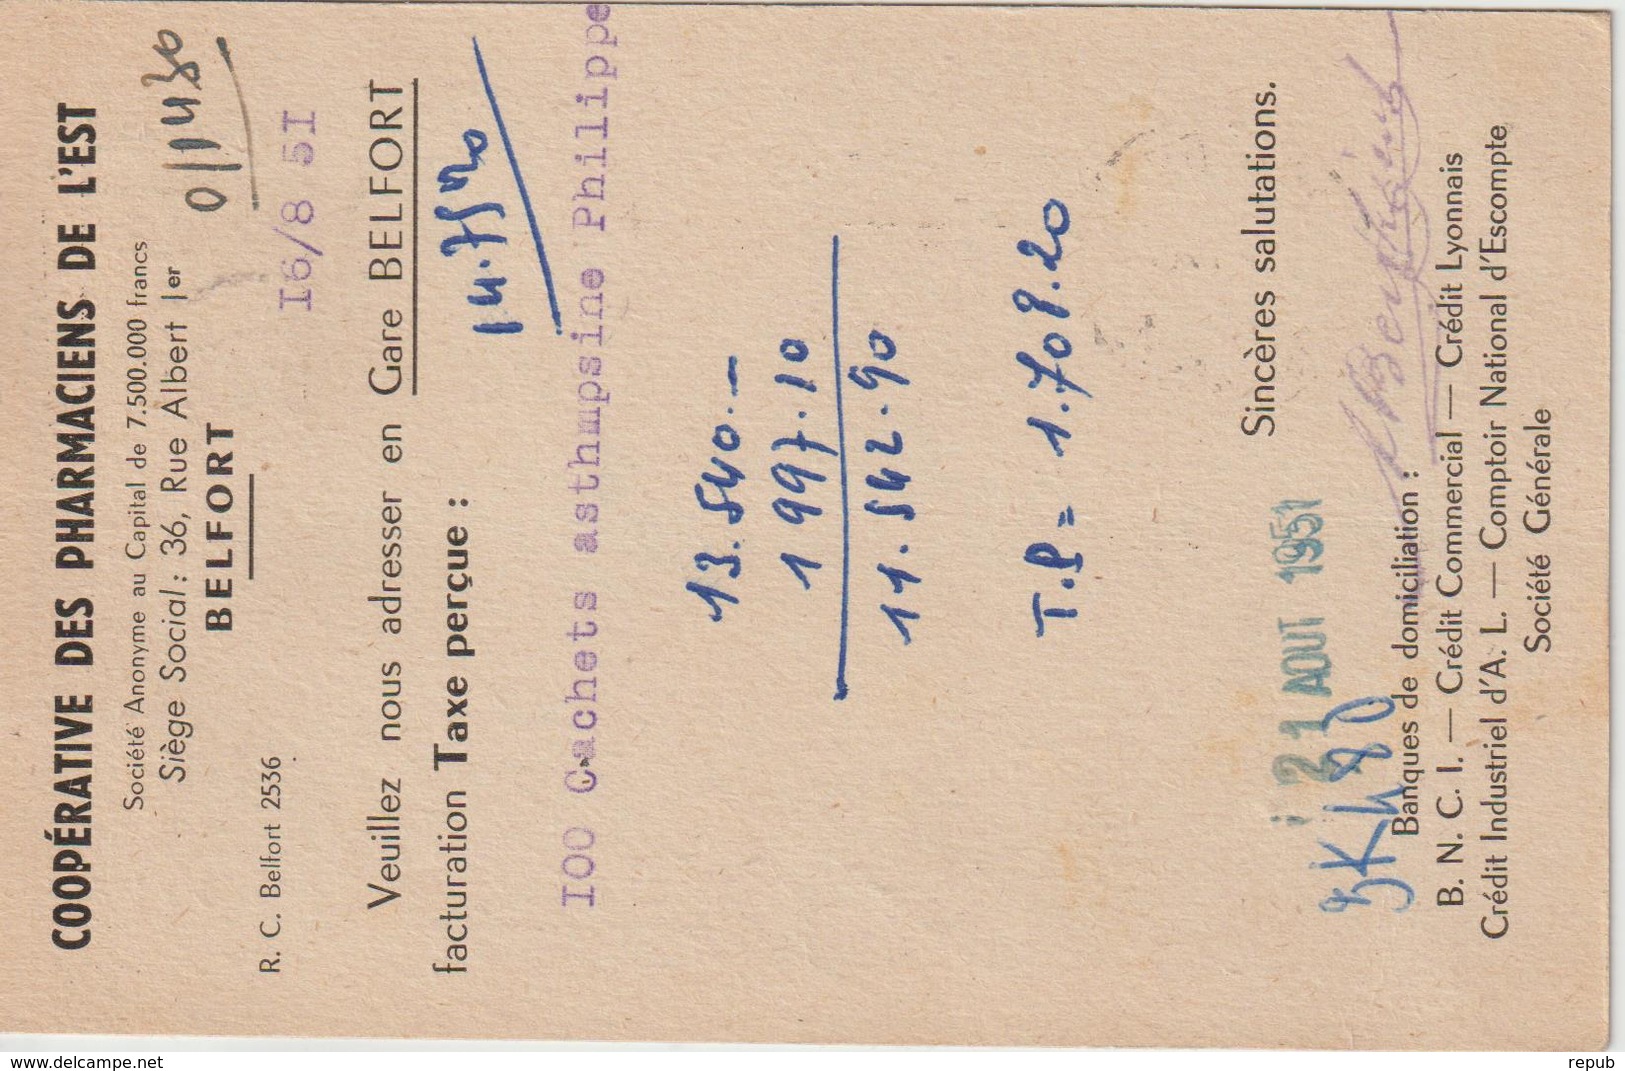 Carte Commerciale 1951 De Belfort Pour St Brieuc Oblit. Krag - 1921-1960: Moderne